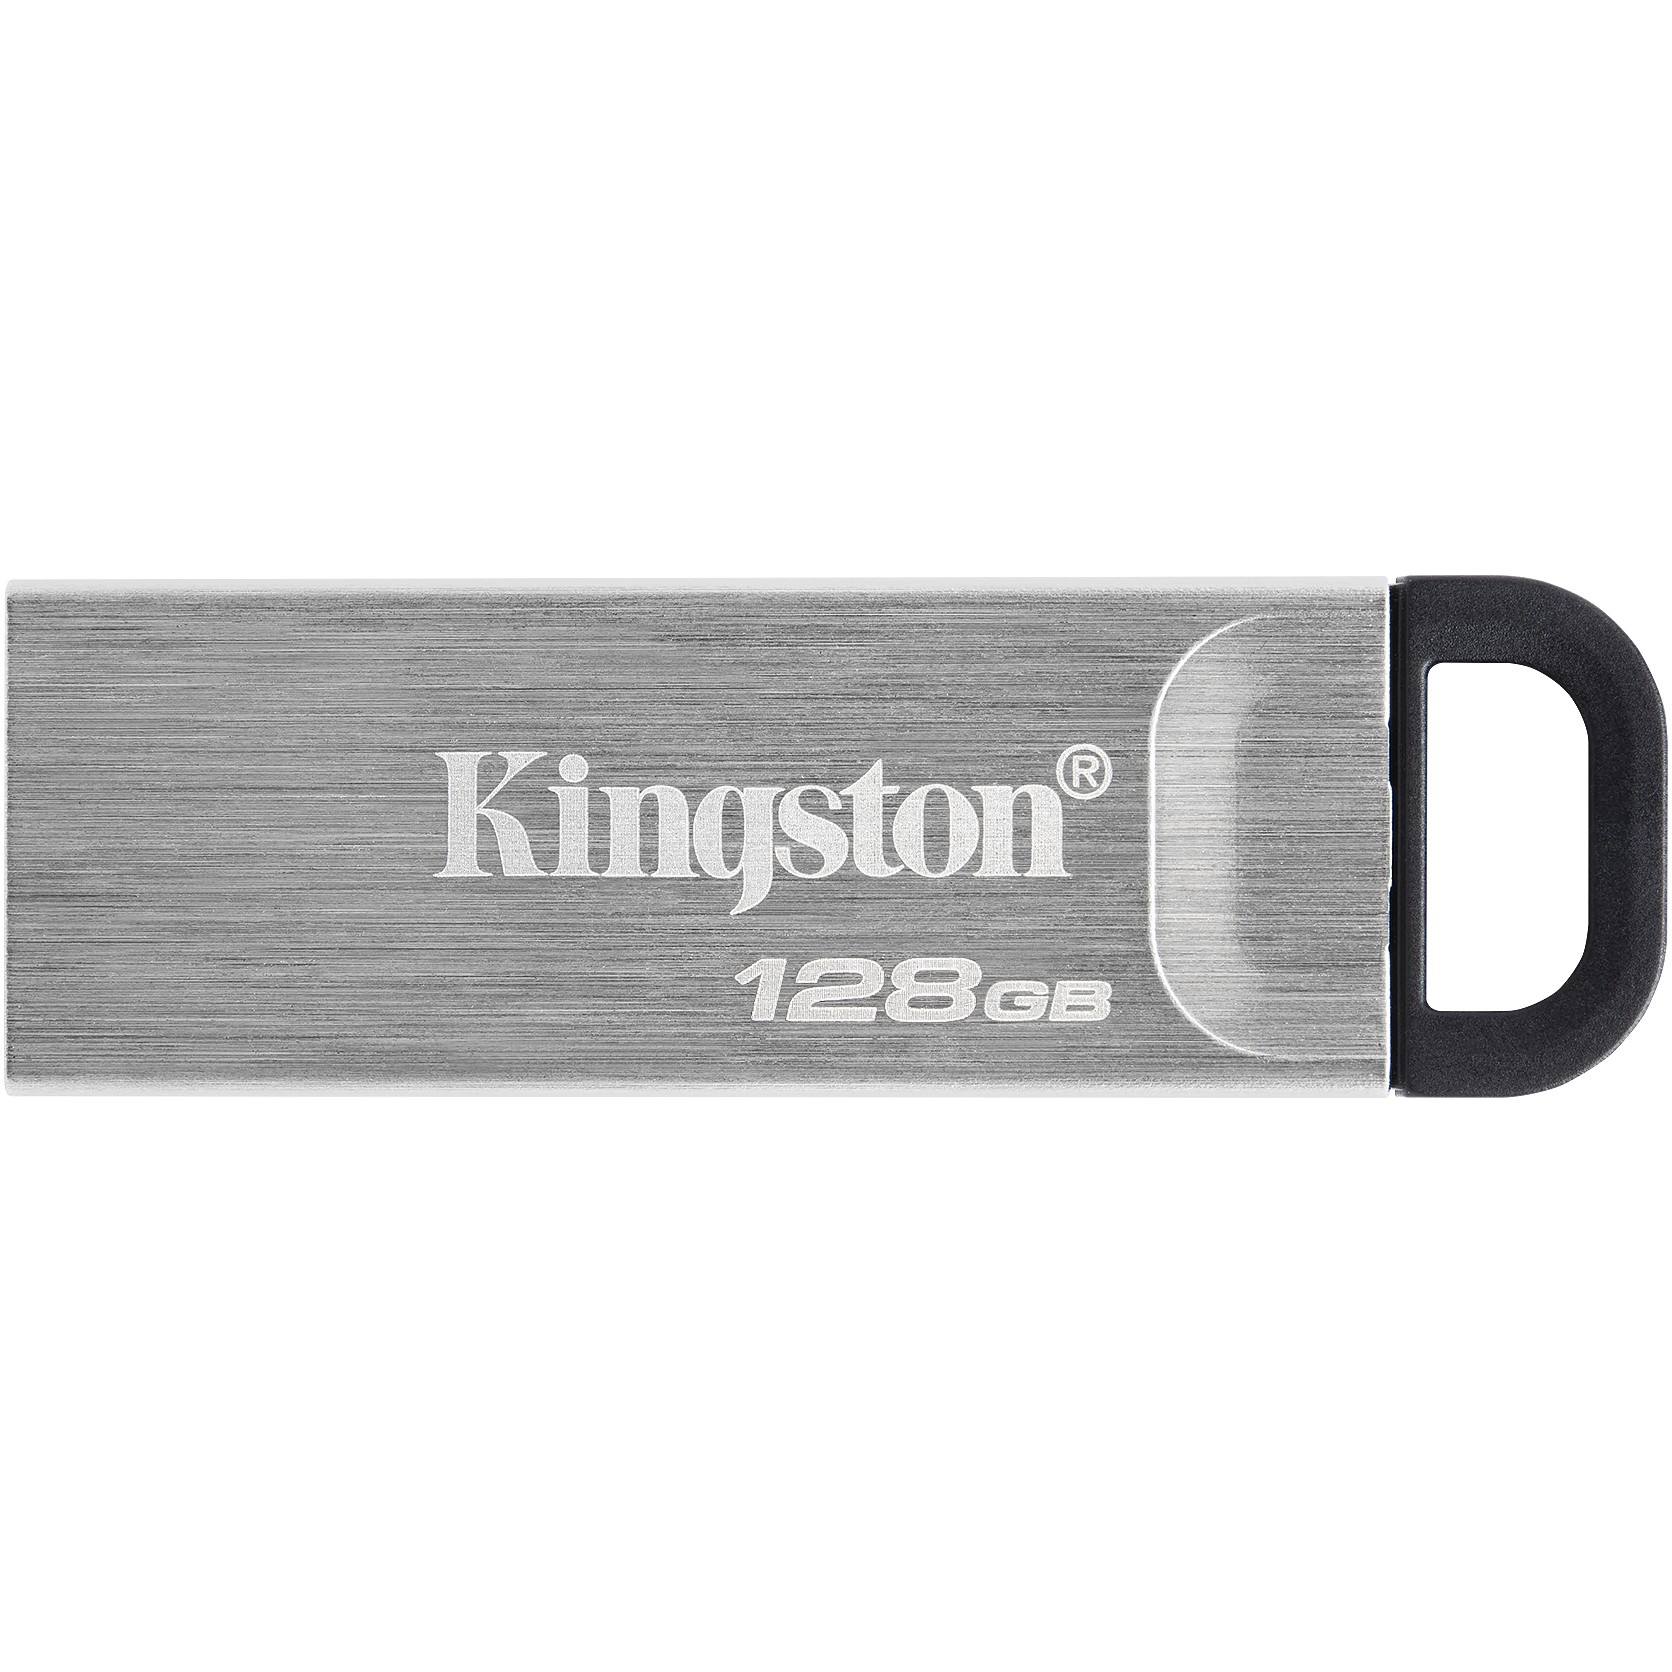 Kingston DTKN/128GB, USB-Sticks, Kingston Technology USB  (BILD1)